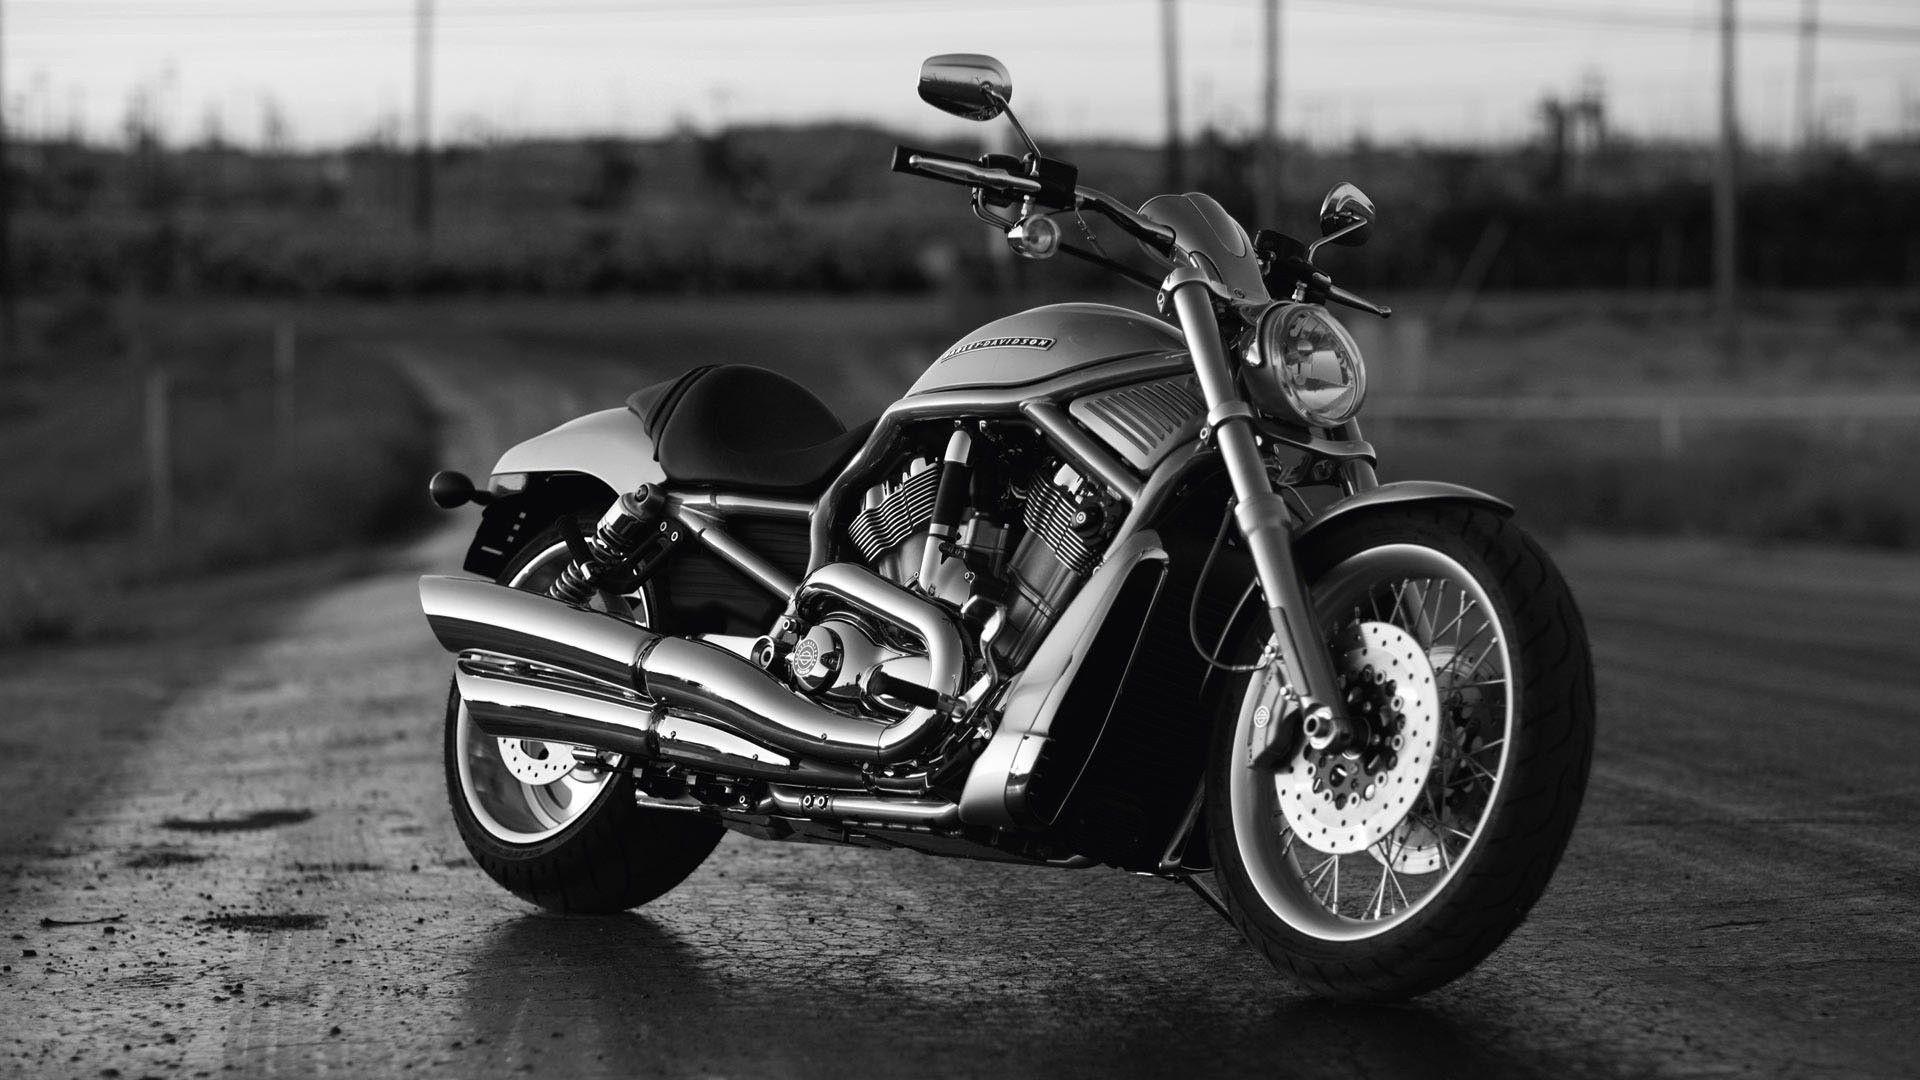 Harley Davidson Motorcycle Wallpaper. Harley Davidson Bike